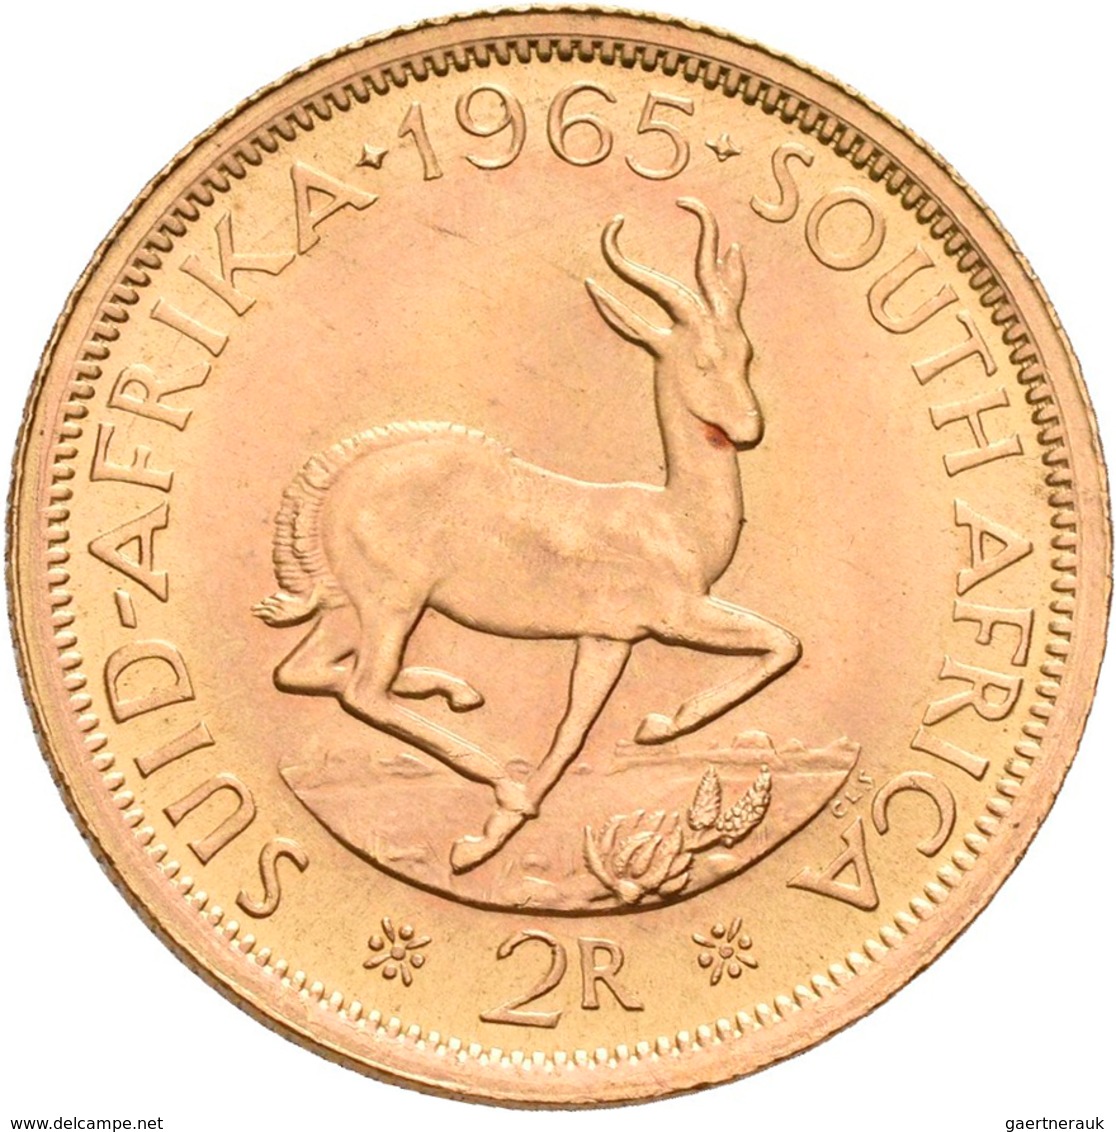 Südafrika - Anlagegold: 2 Rand 1965, KM# 64, Friedberg 11. 7,99 G, 917/1000 Gold, Vorzüglich. - Südafrika